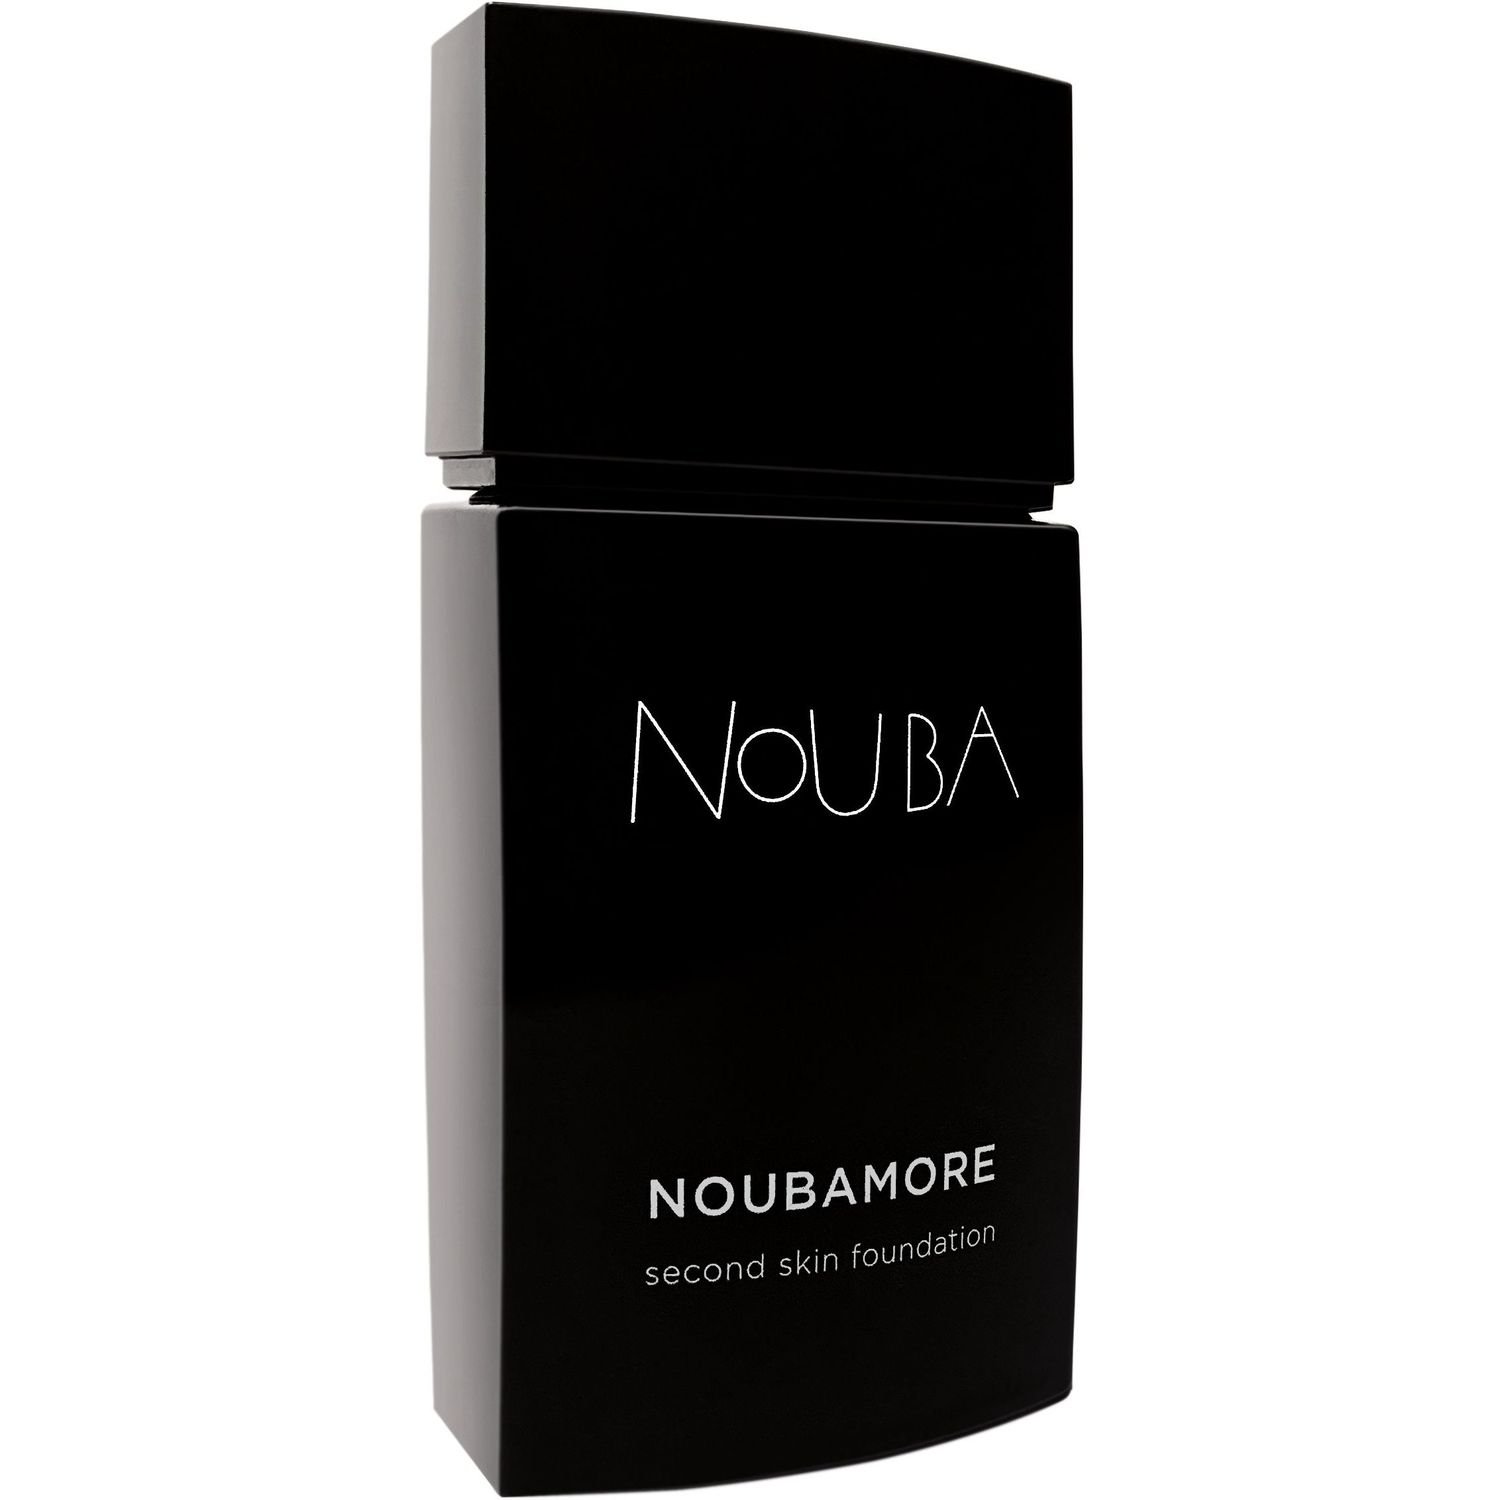 Тональная основа Nouba Noubamore Second Skin тон 87, 30 мл - фото 1